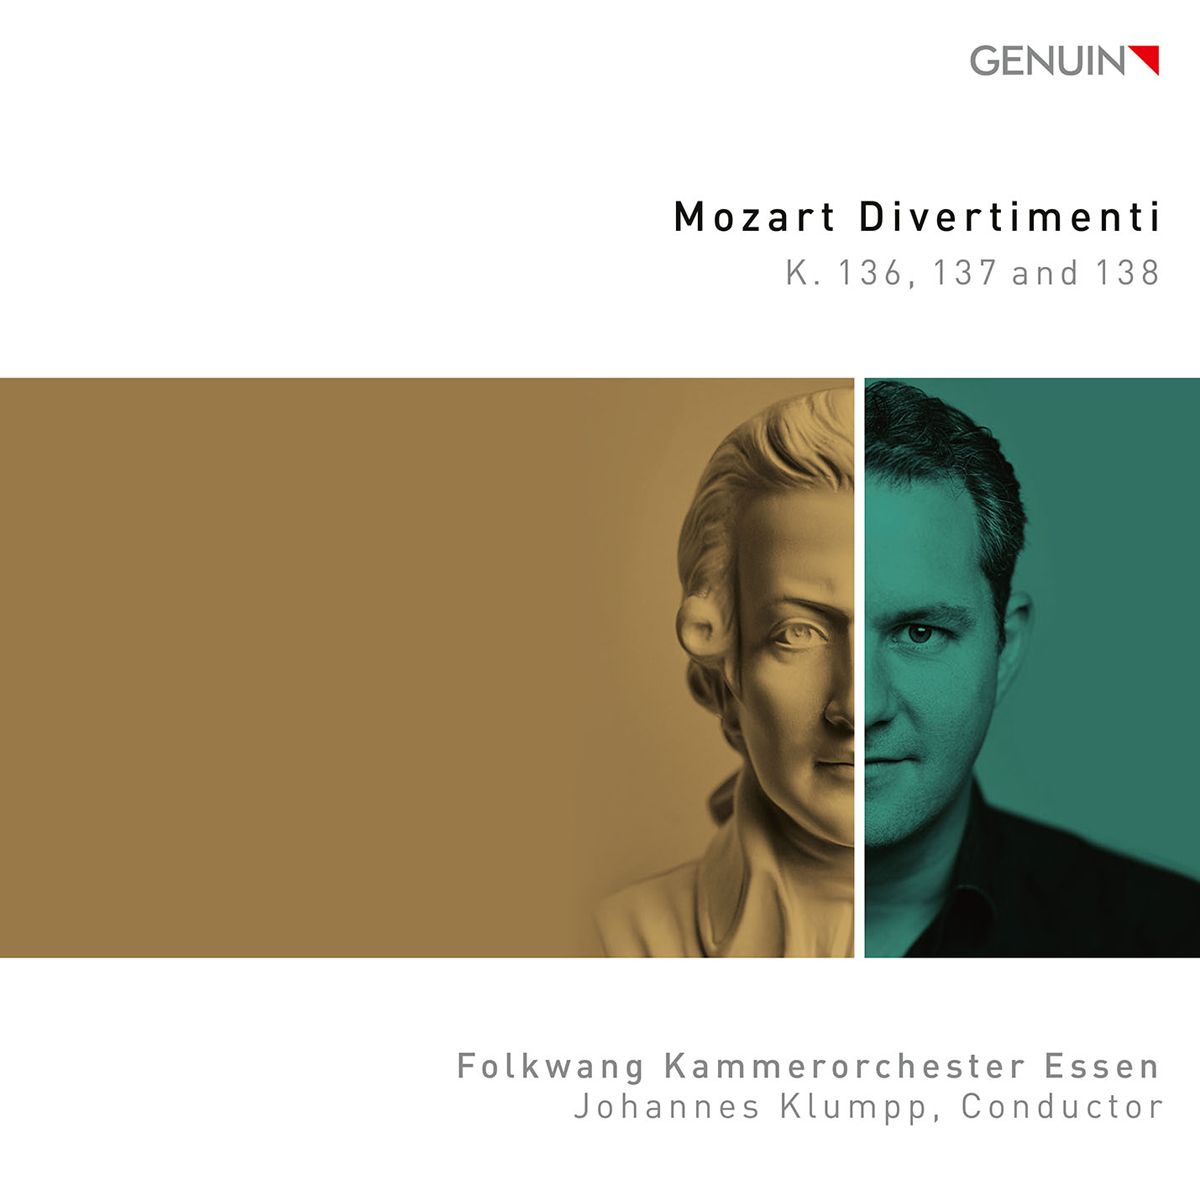 CD album cover 'Mozart Divertimenti' (GEN 22762) with Folkwang Kammerorchester Essen, Johannes Klumpp